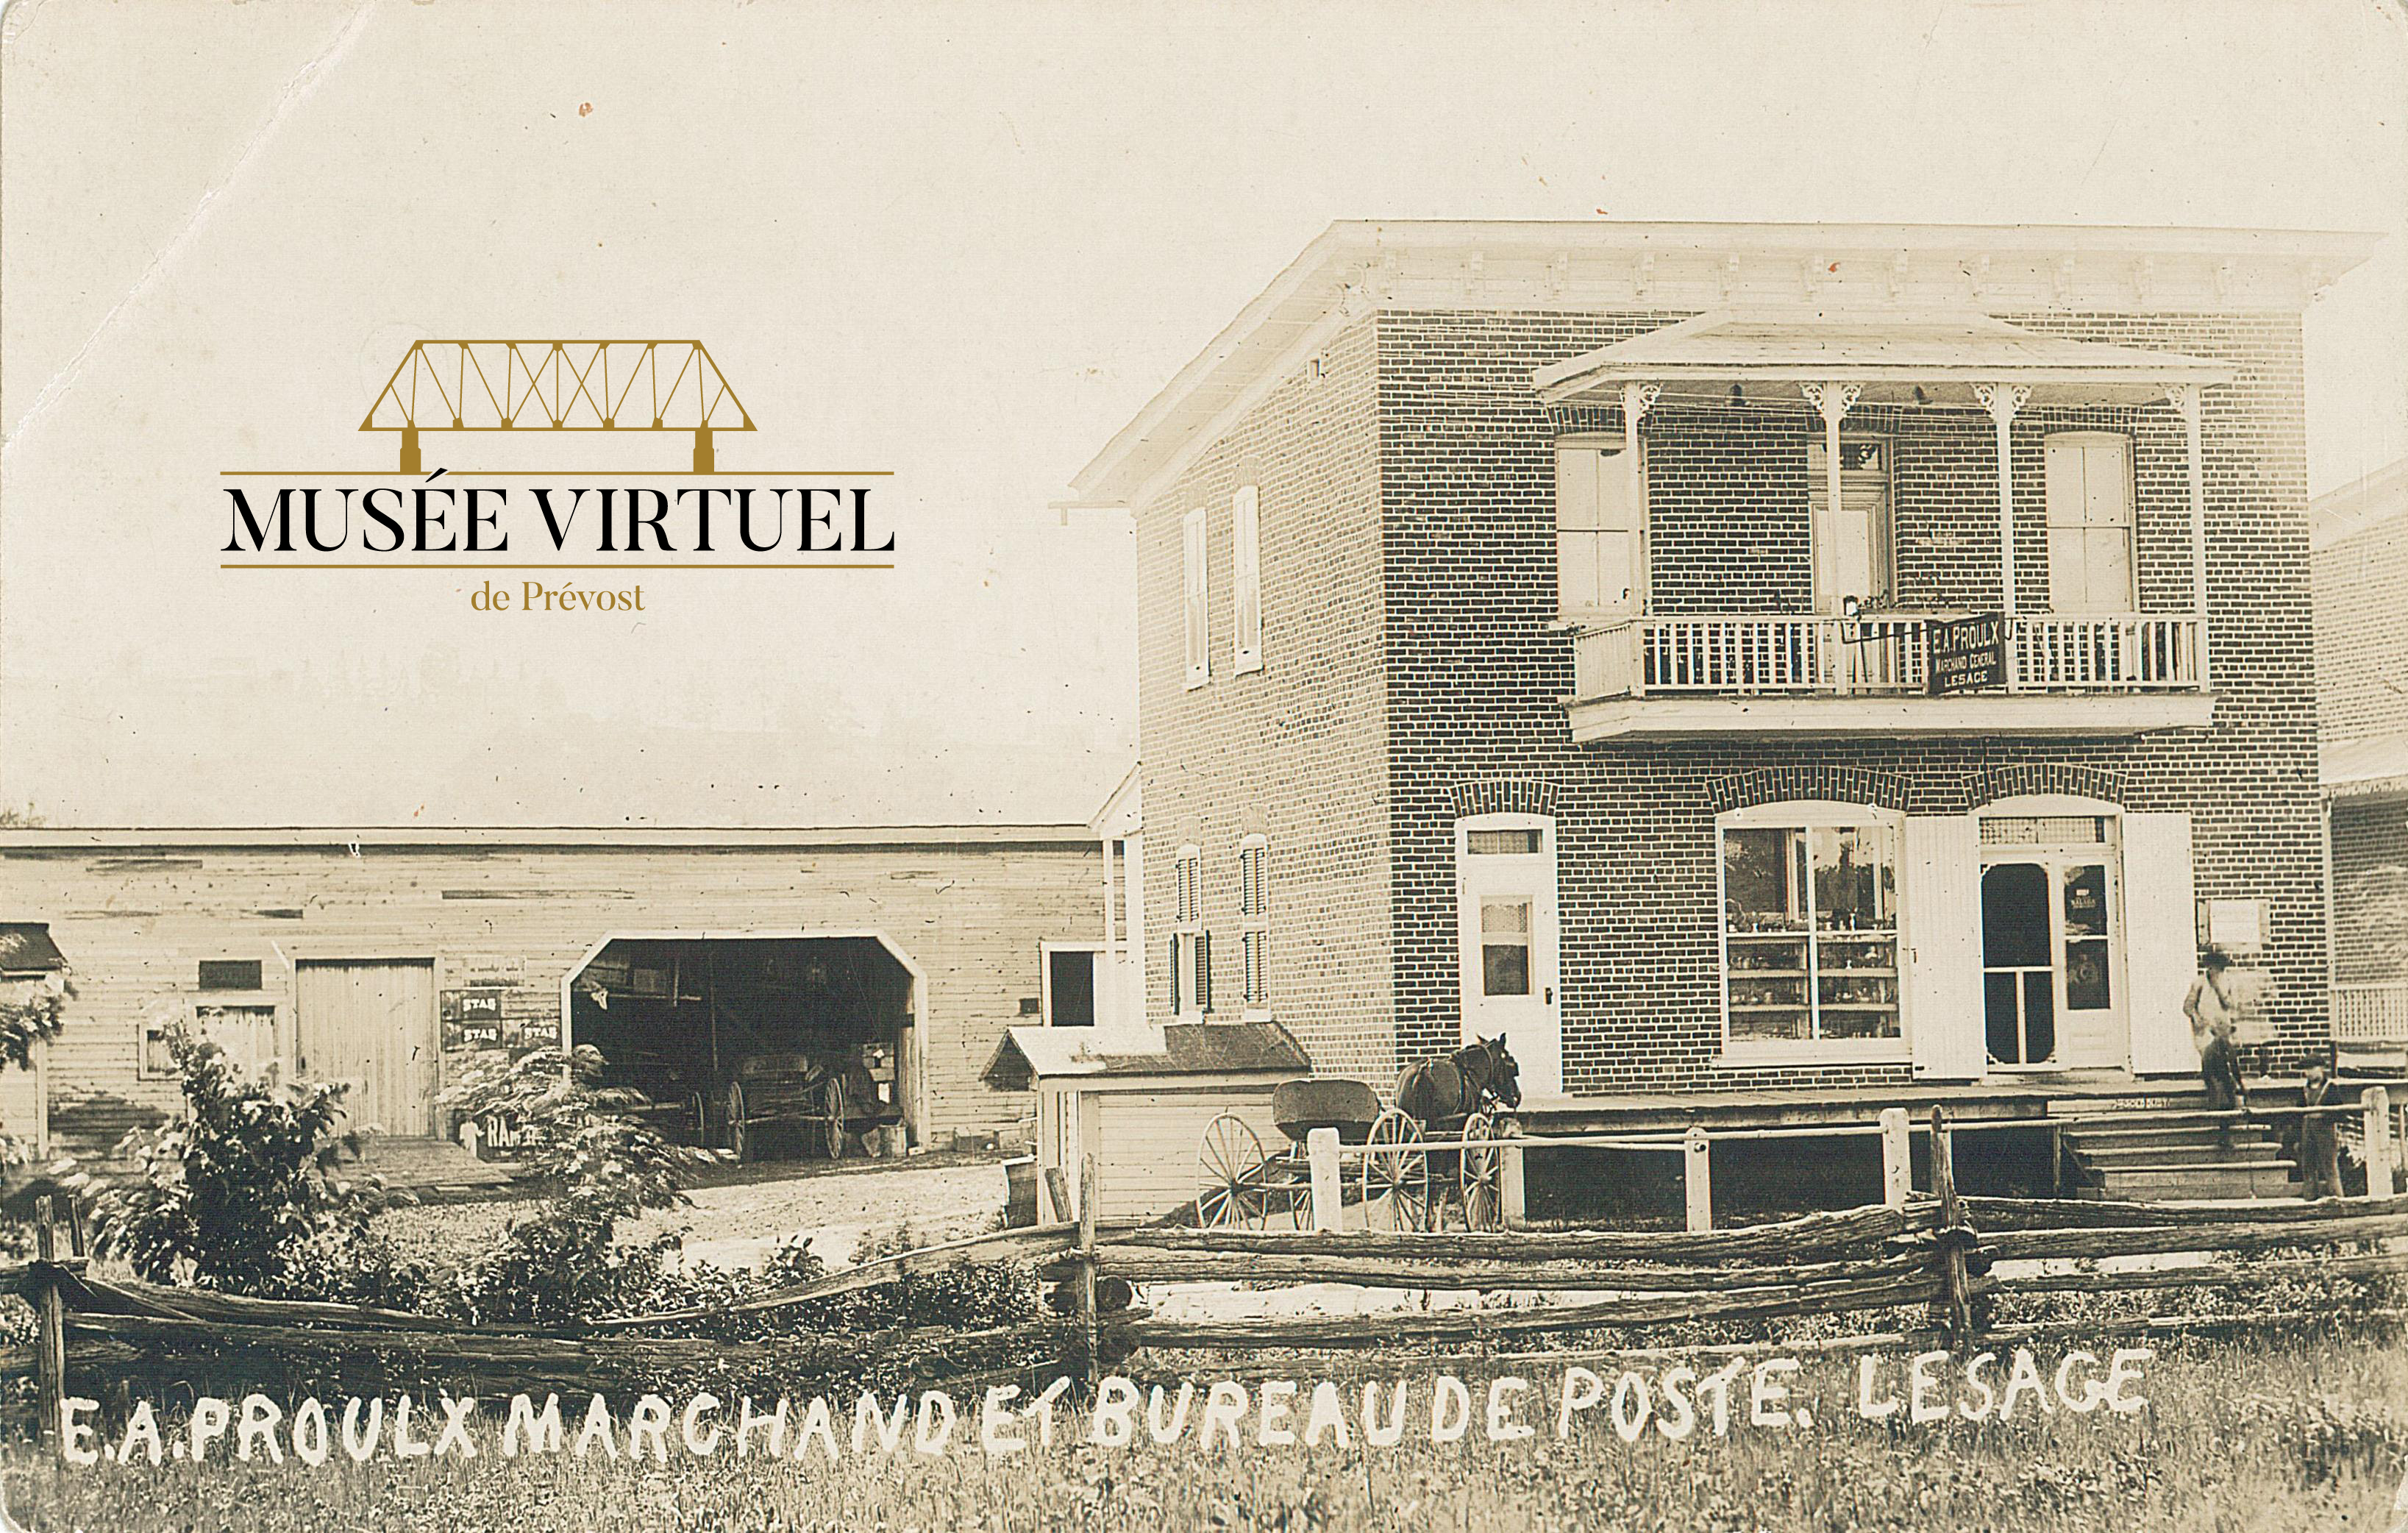 1. E. A. Proulx Marchand et bureau de poste, vers 1920 - Collection de Sheldon Segal